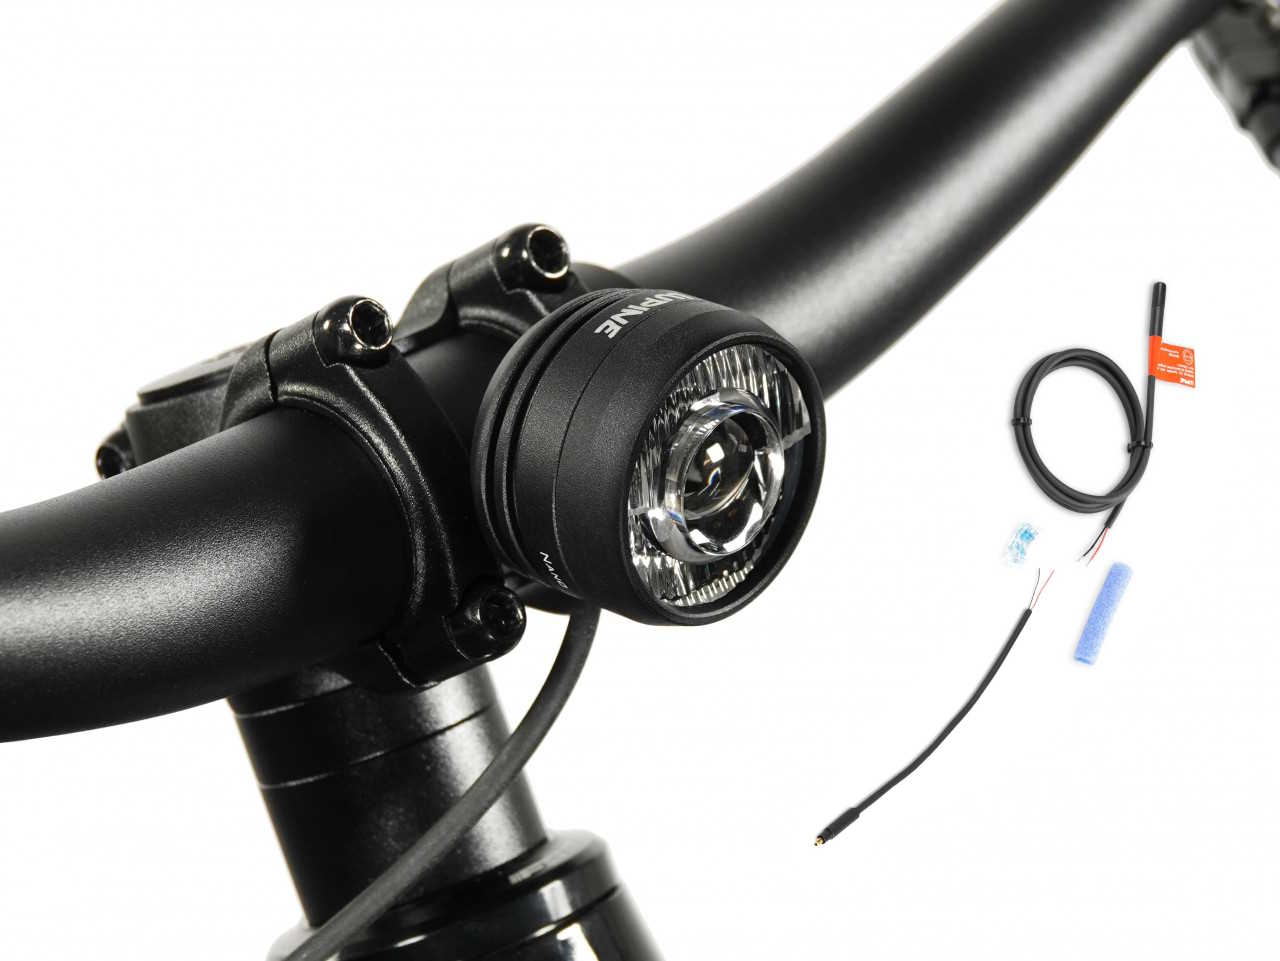 Produktbild von Lupine SL Nano für E-Bikes mit TQ Motor, E-Bike Beleuchtung mit 900 Lumen Fernlicht, Lenkerhalter 35mm + Kabelfernbedienung